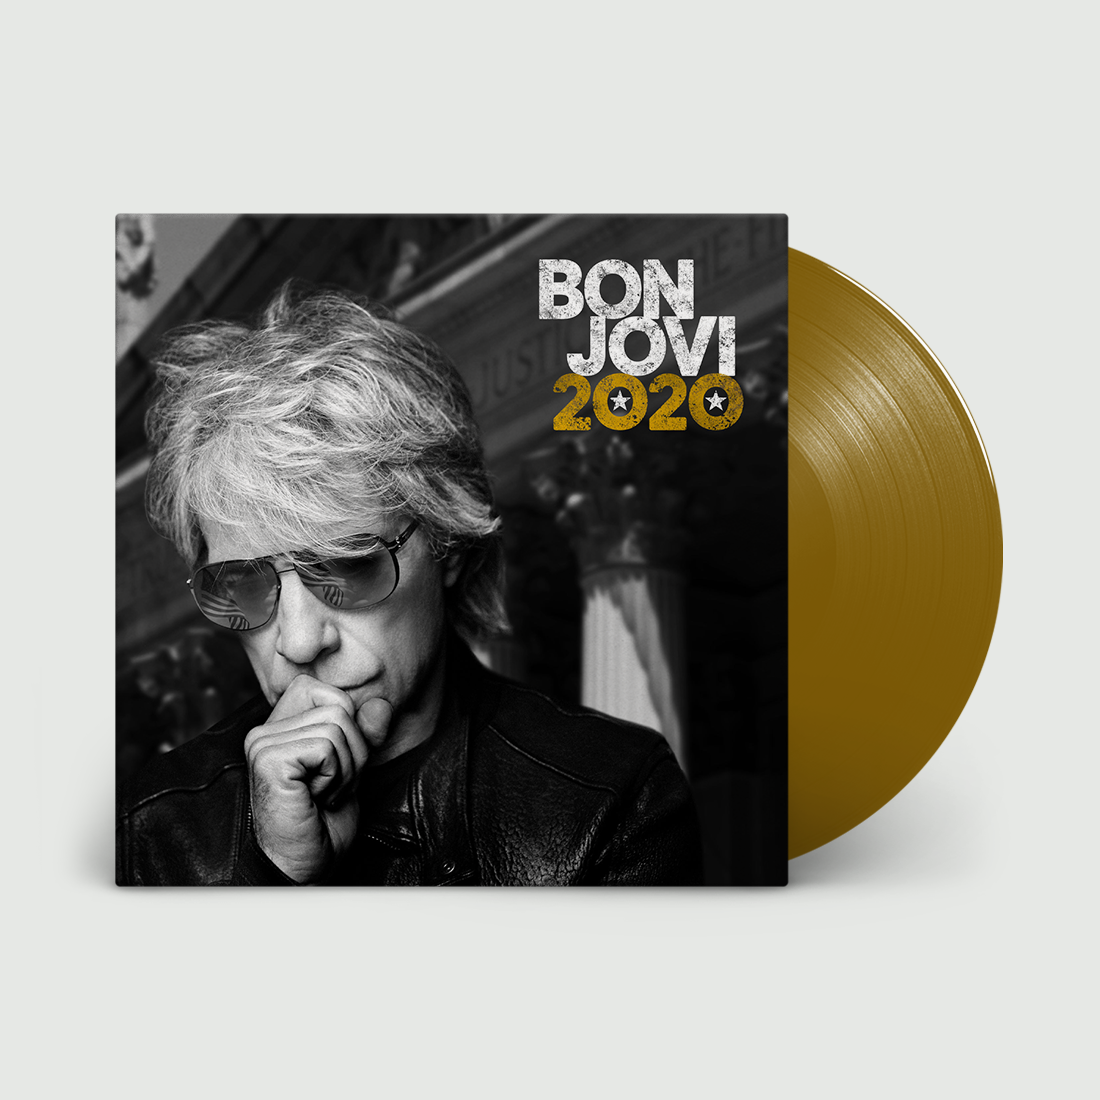 Bon Jovi - Bon Jovi 2020: Gold Vinyl LP